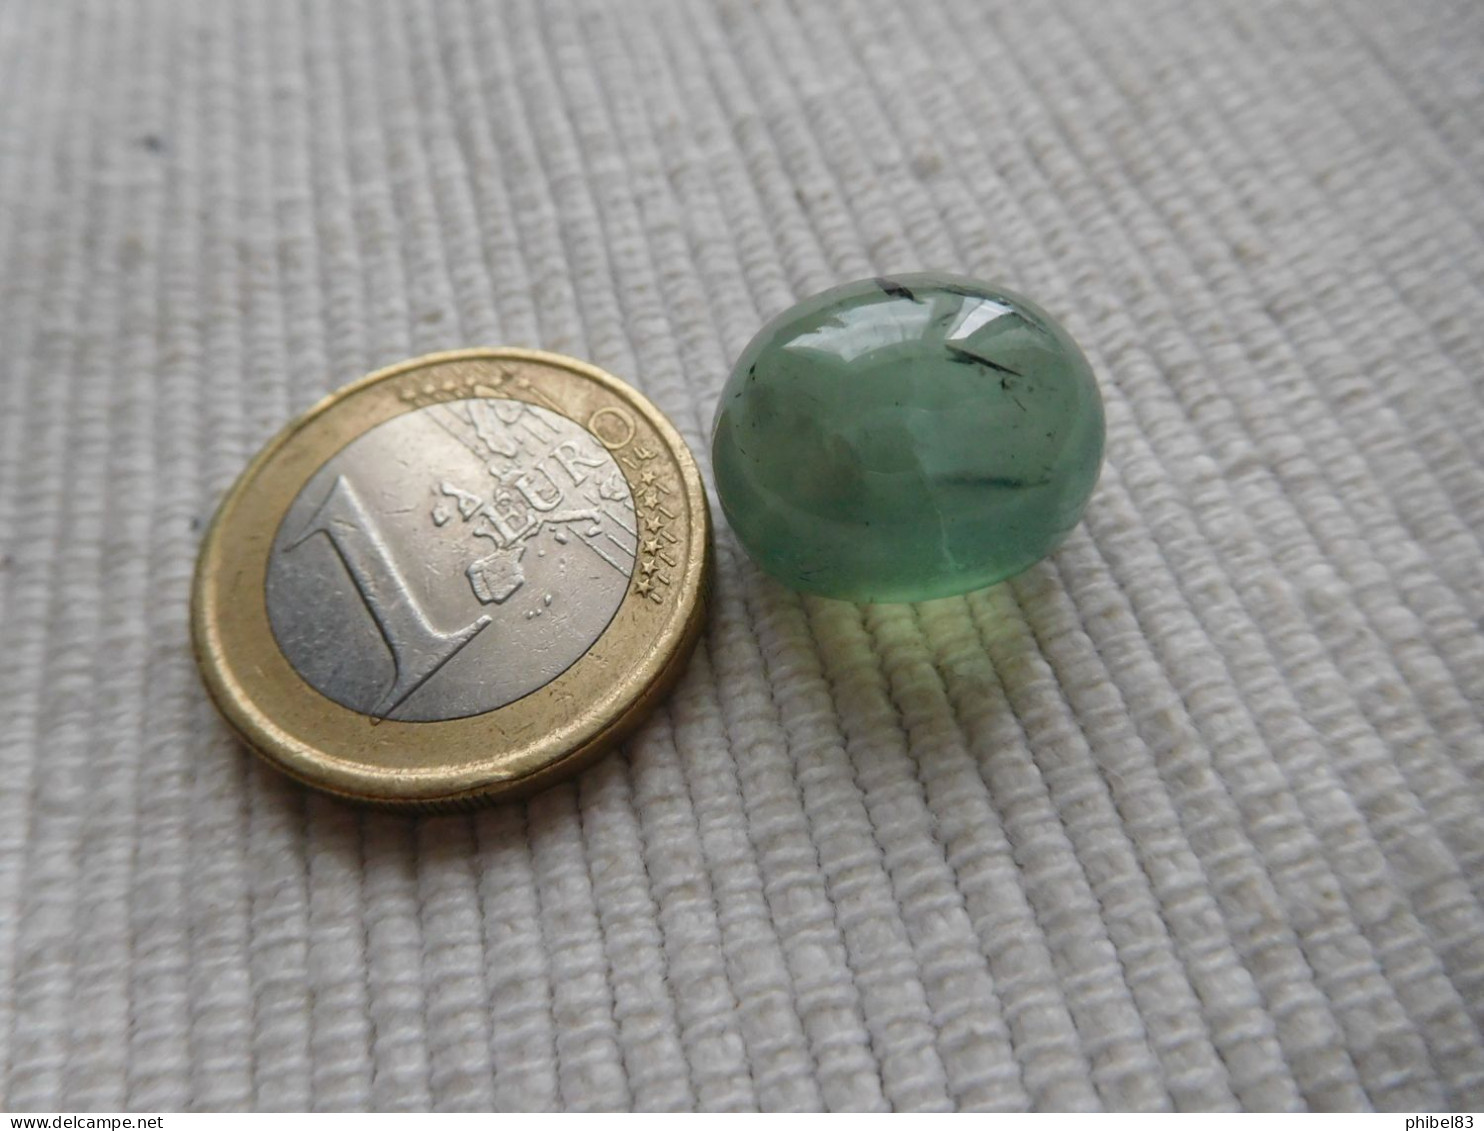 Cabochon de Prehnite verte, taille ovale 21.86 carats. CL21